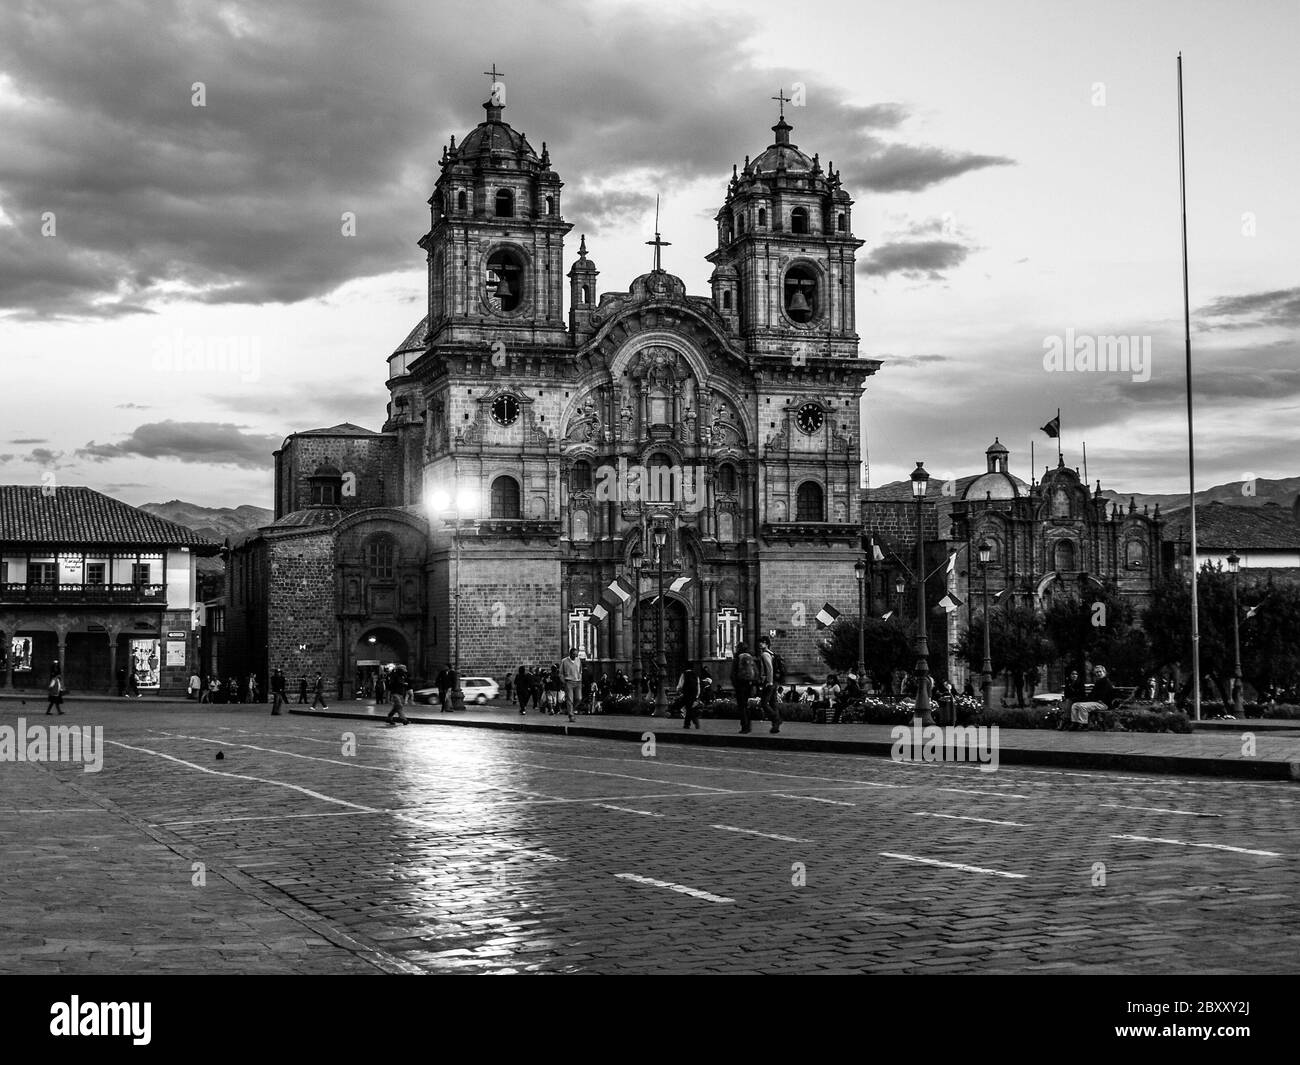 Chiesa della Società di Gesù - in spagnolo Iglesia la Compania de Jesus, Cusco, Perù. Immagine in bianco e nero. Foto Stock